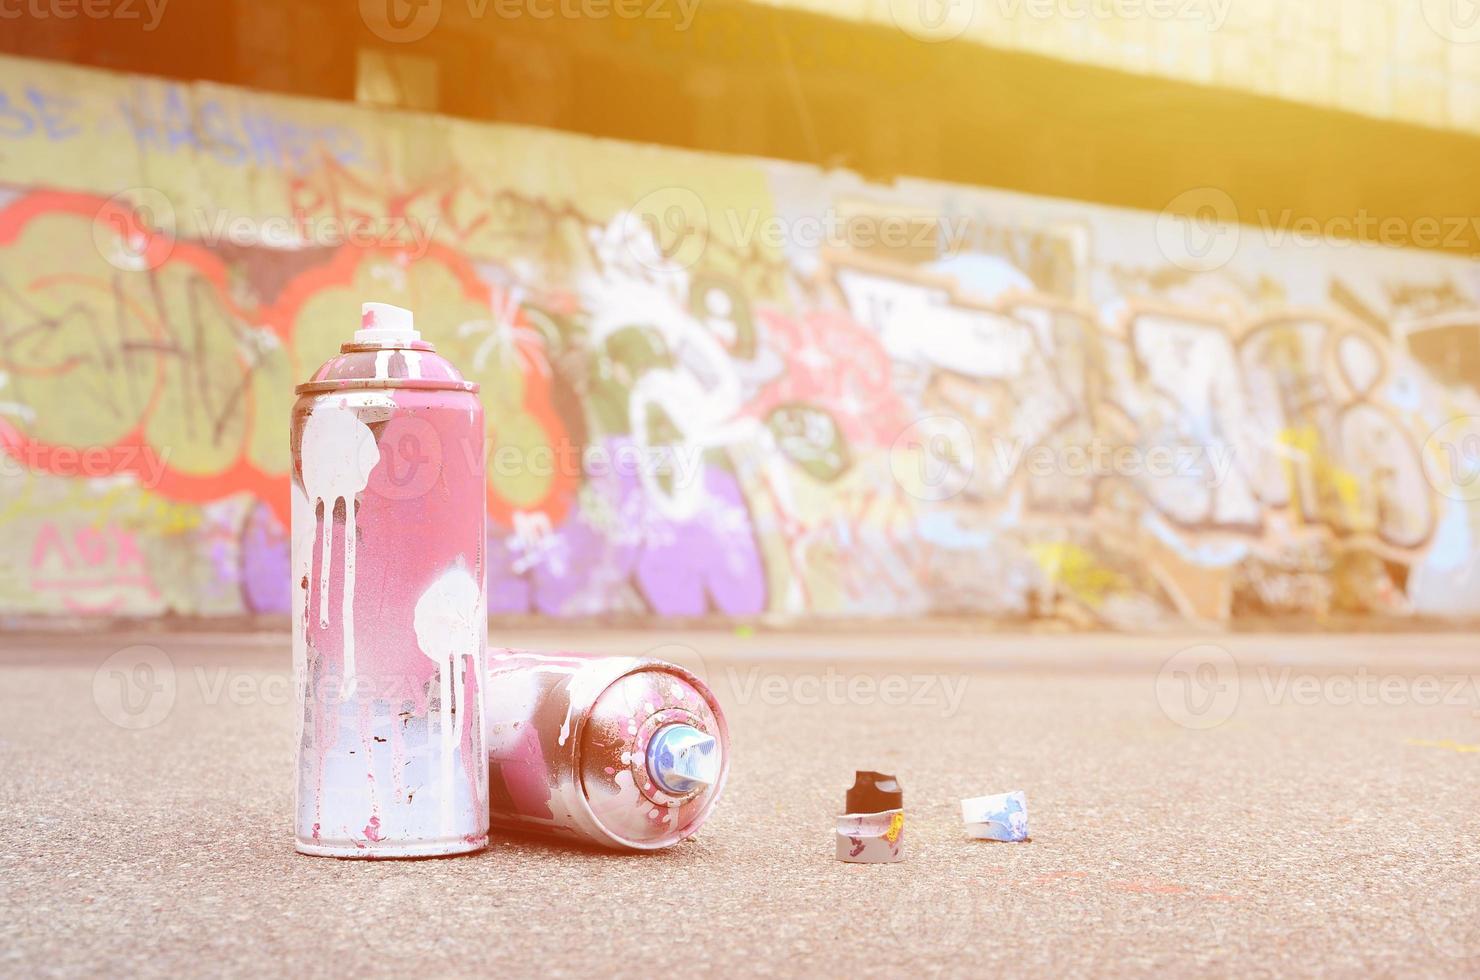 mehrere gebrauchte sprühdosen mit rosa und weißer farbe und kappen zum sprühen von farbe unter druck liegen auf dem asphalt in der nähe der bemalten wand in farbigen graffiti-zeichnungen foto